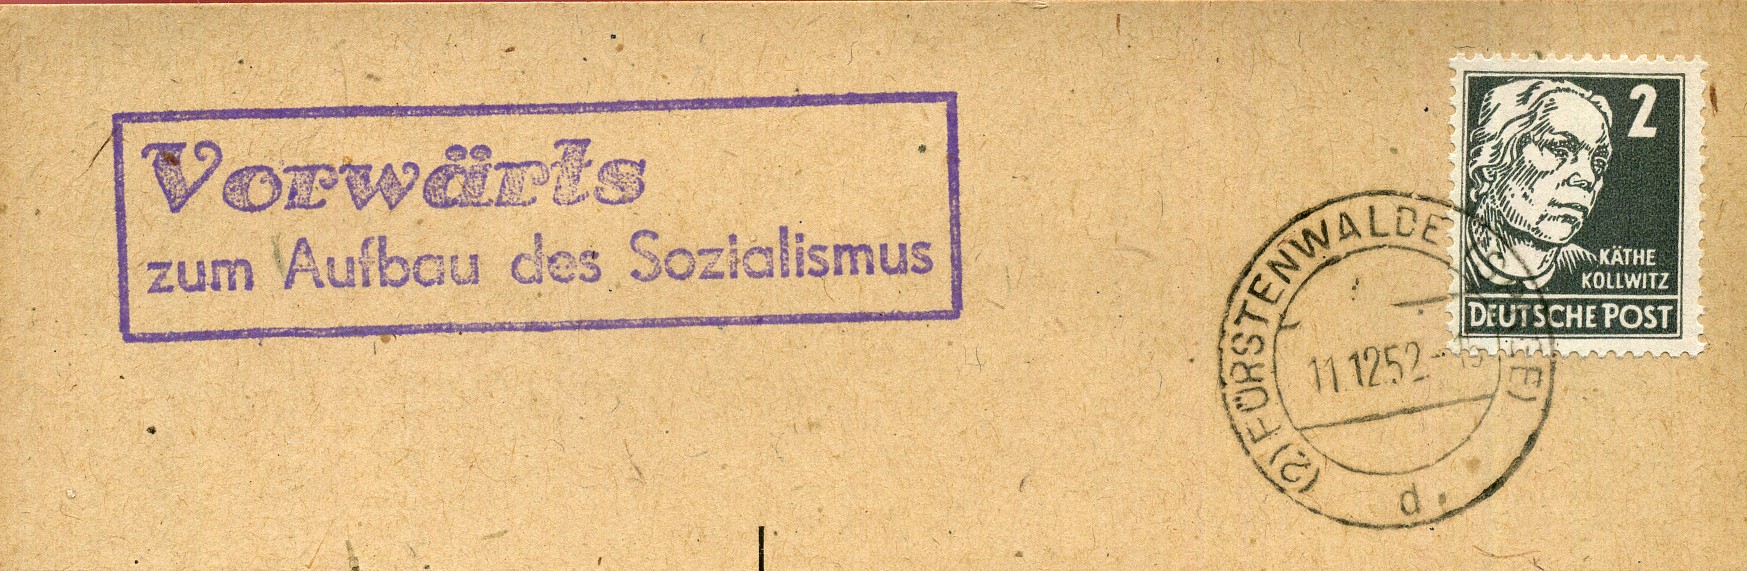 Vorwärts zum Aufbau des Sozialismus - Handstempel - violett - Fürstenwalde